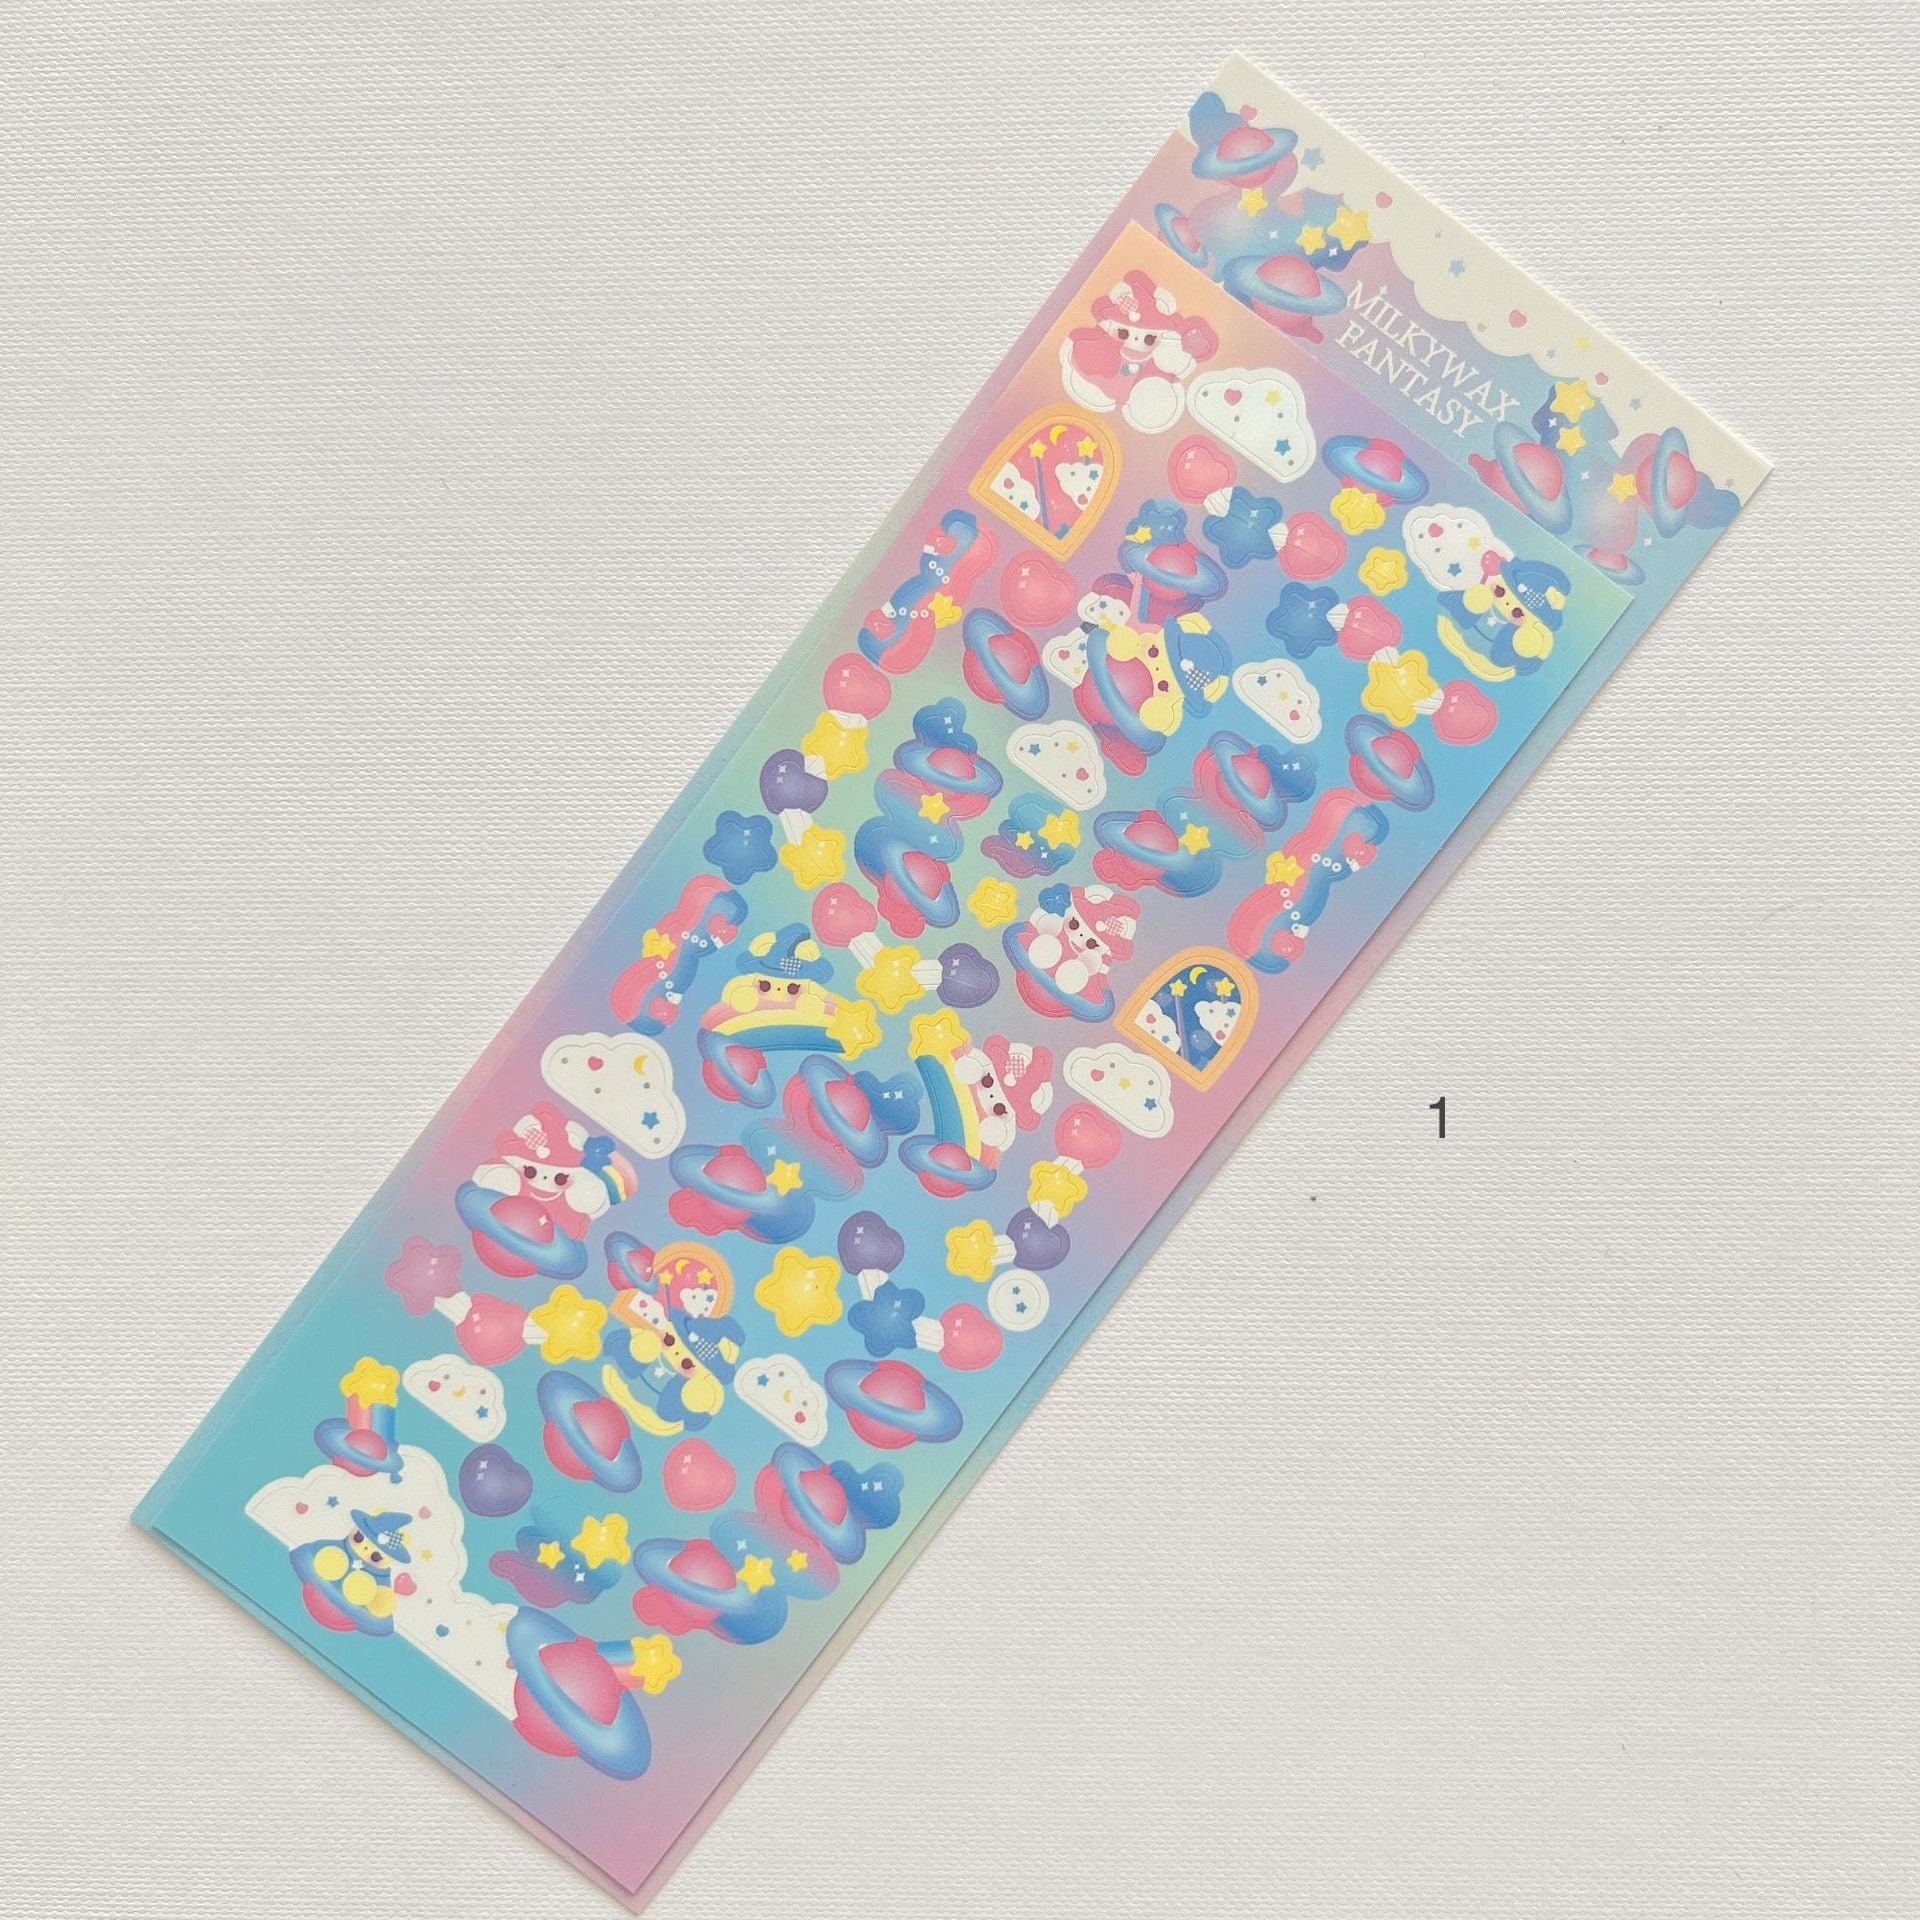 Small Kawaii Kpop Toplaoder Deco Sticker Sheet, 3D Korean Girl